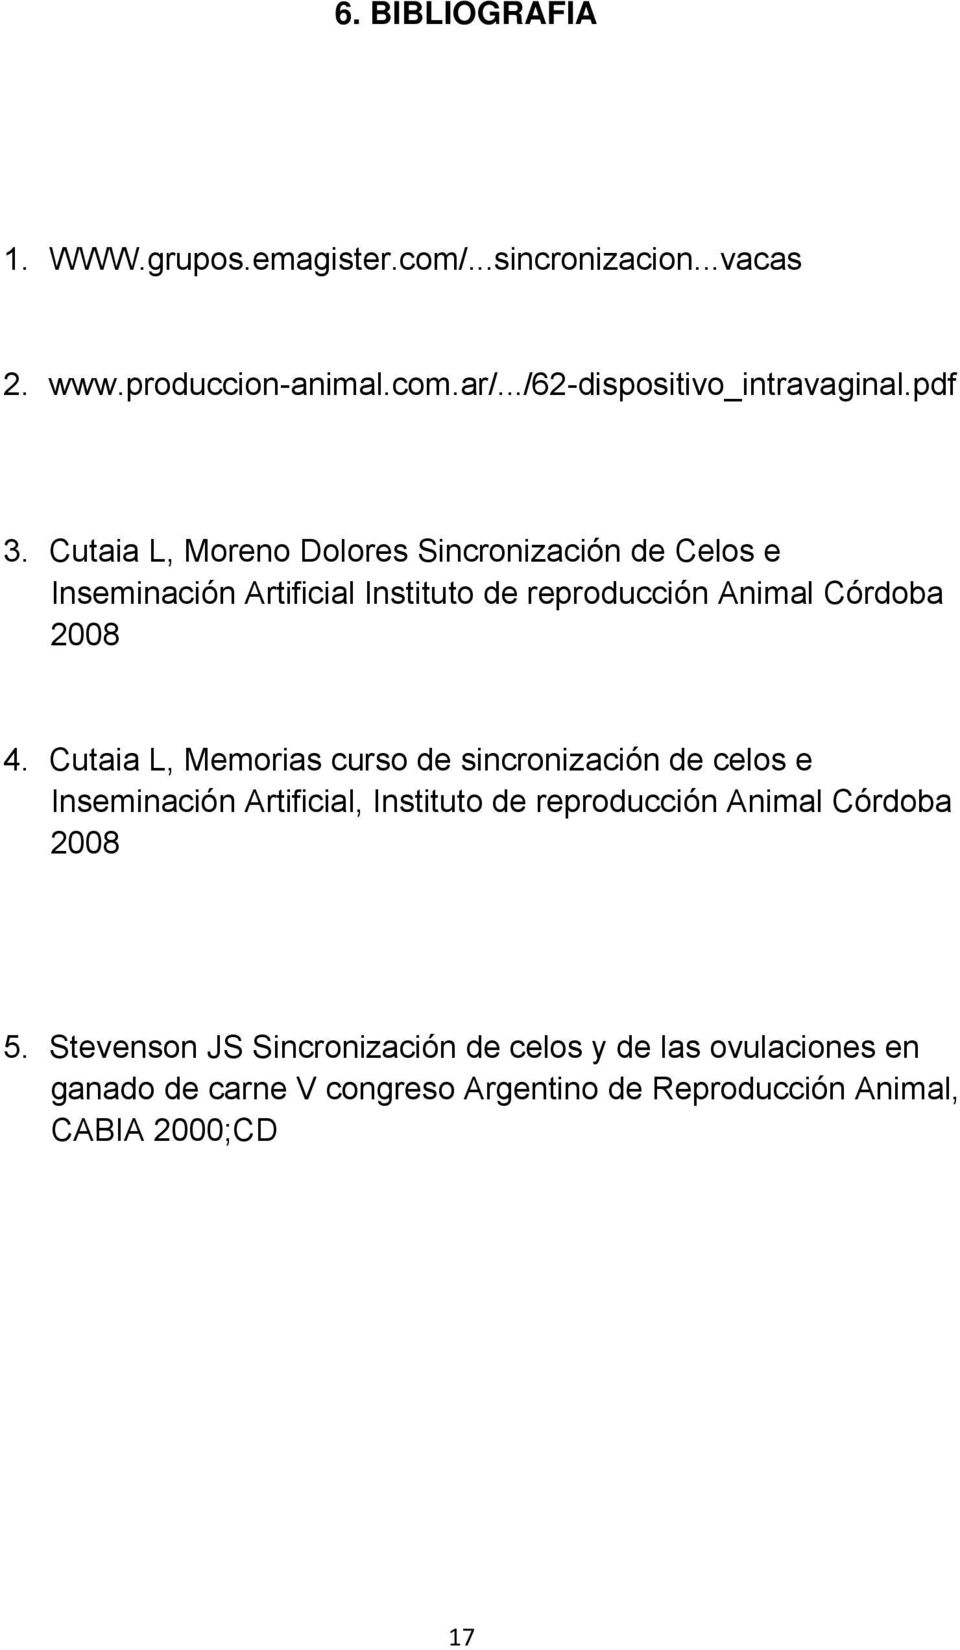 Cutaia L, Memorias curso de sincronización de celos e Inseminación Artificial, Instituto de reproducción Animal Córdoba 2008 5.